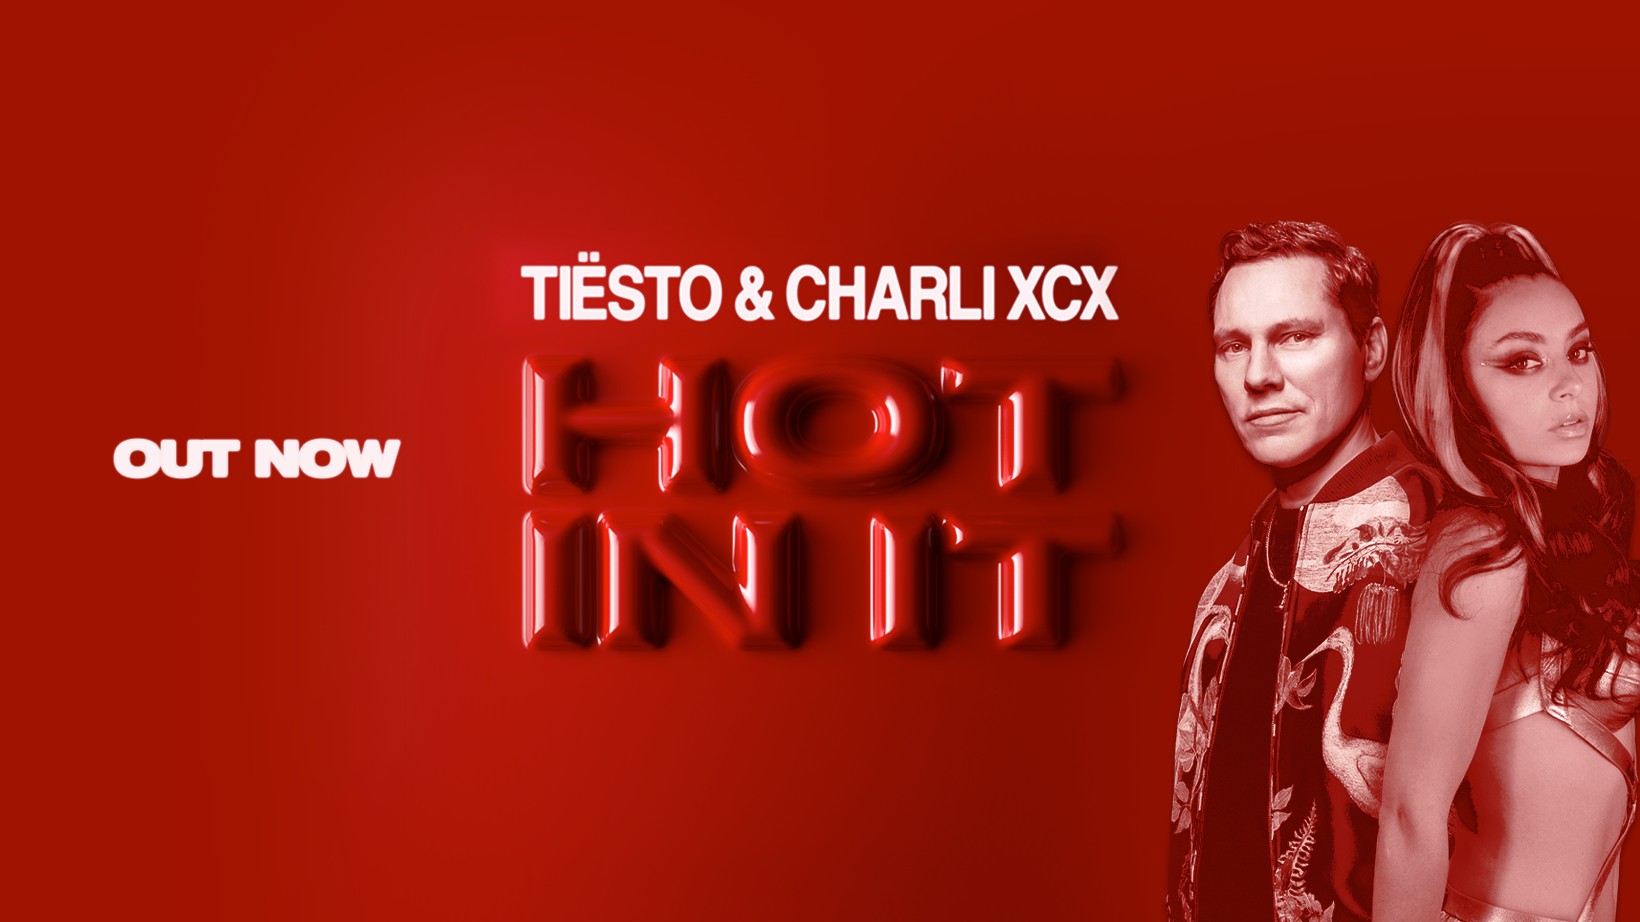 Tiësto & Charli XCX - Hot In It - Con Testo e Traduzione